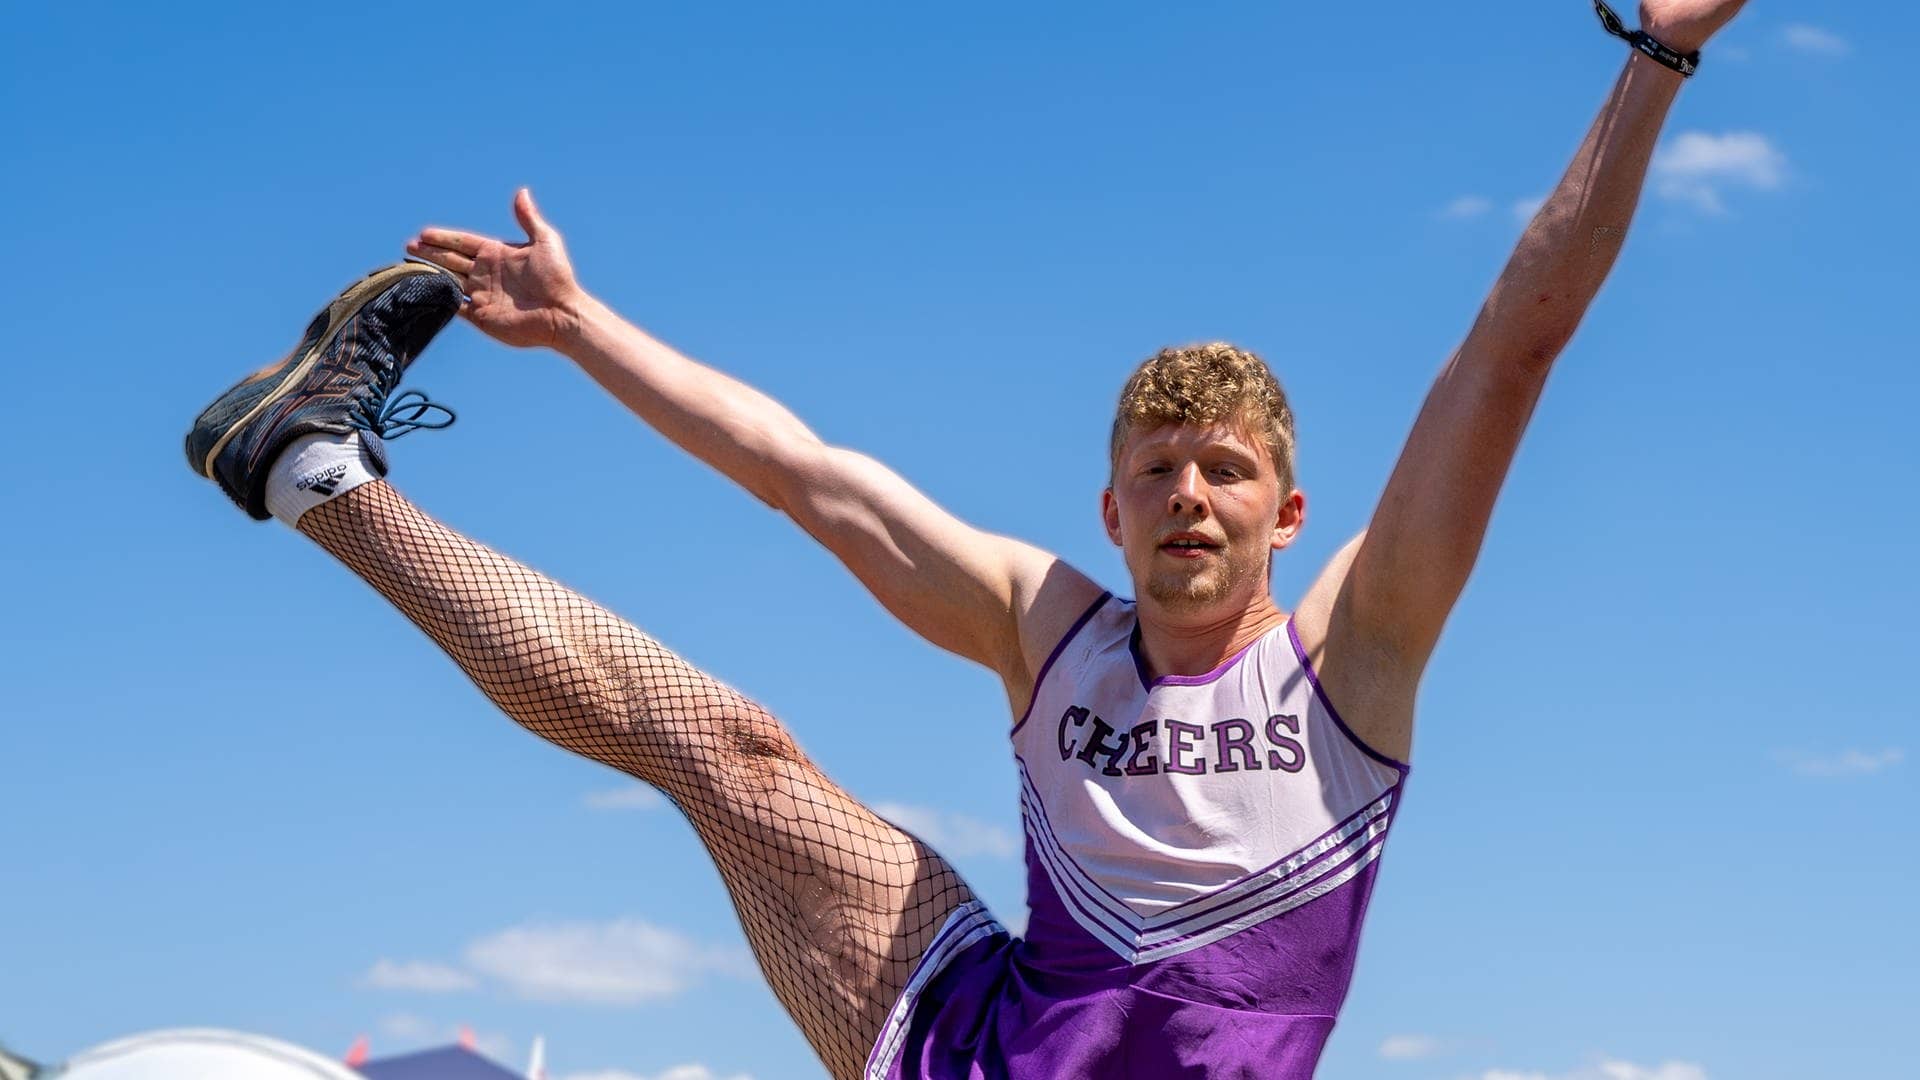 Ein junger Mann hat ein lila Cheerleader-Köstüm an und streckt sein Bein seitlich in die Höhe